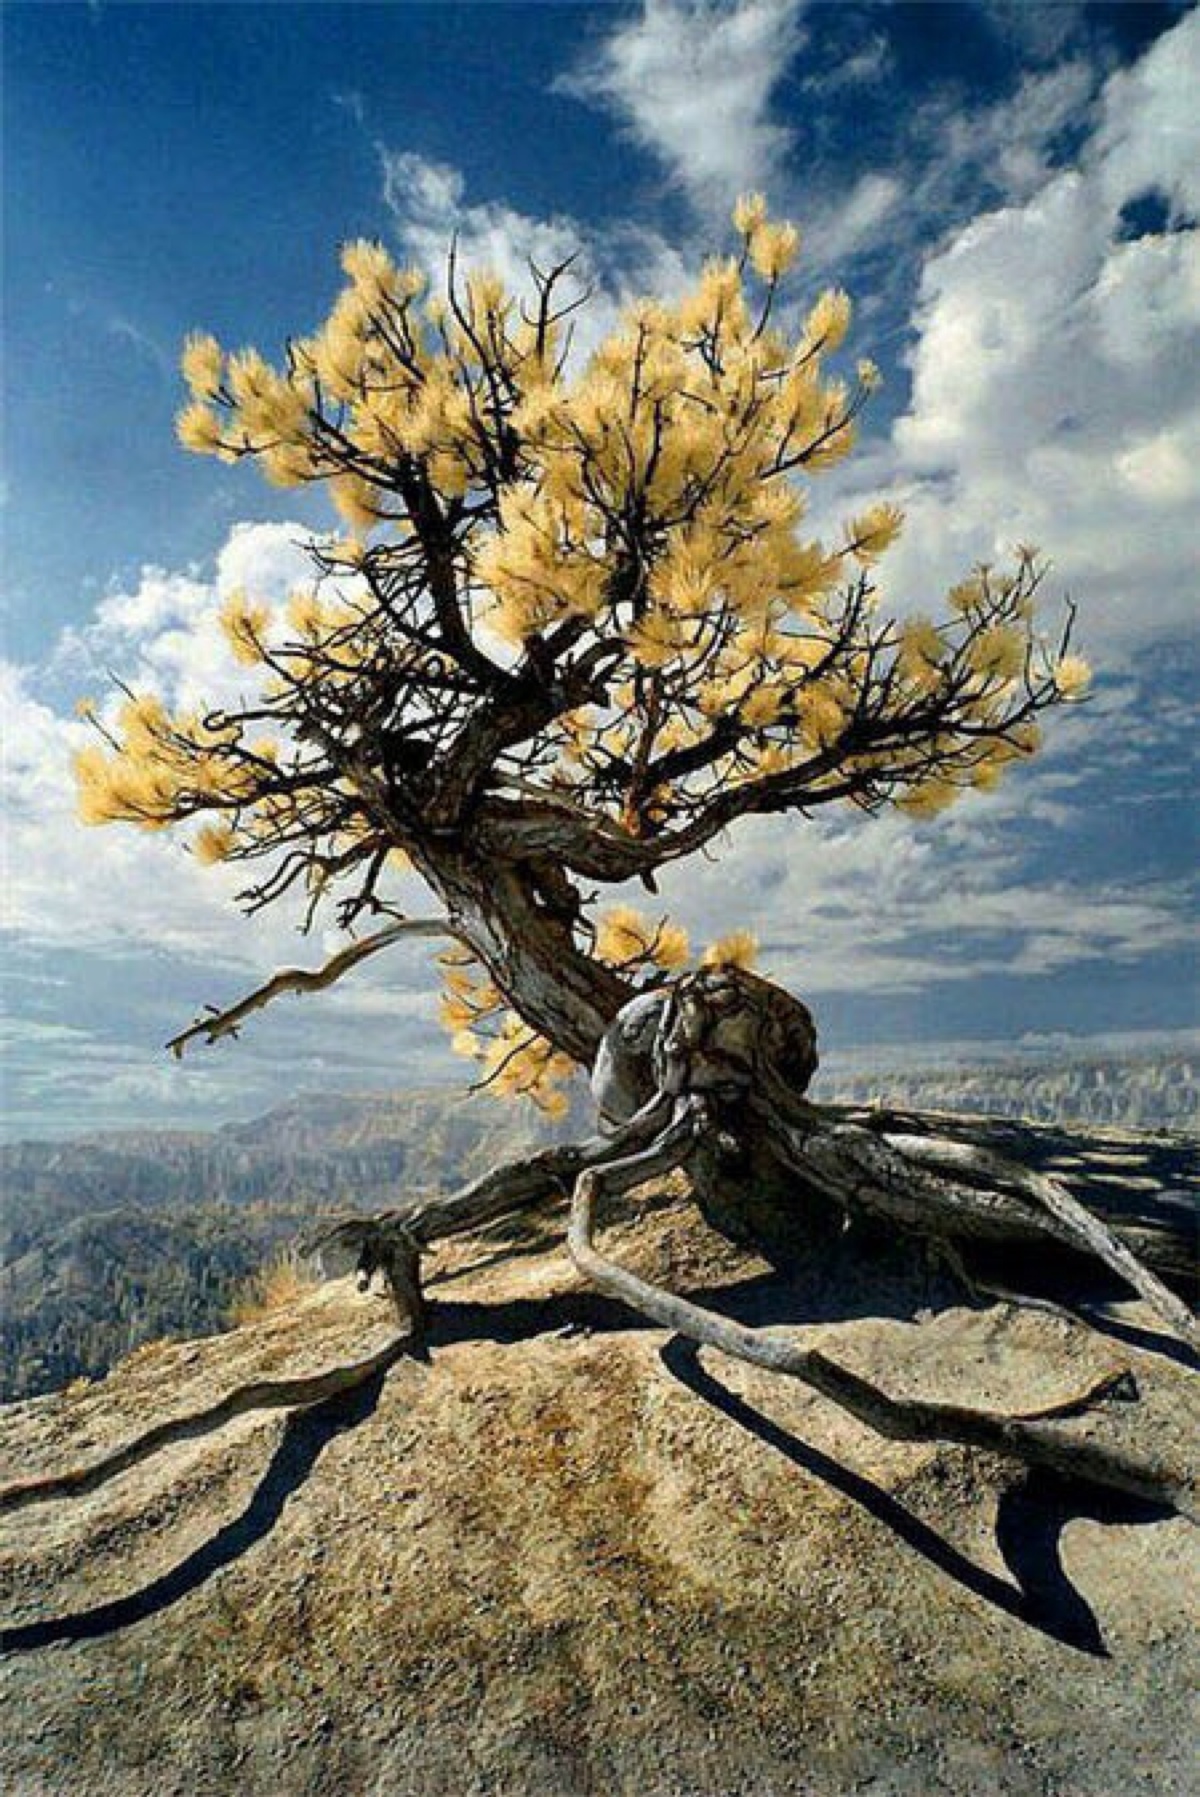 生命之树,在于根的顽强,枝的不挠,叶的坚强和花的迸发!